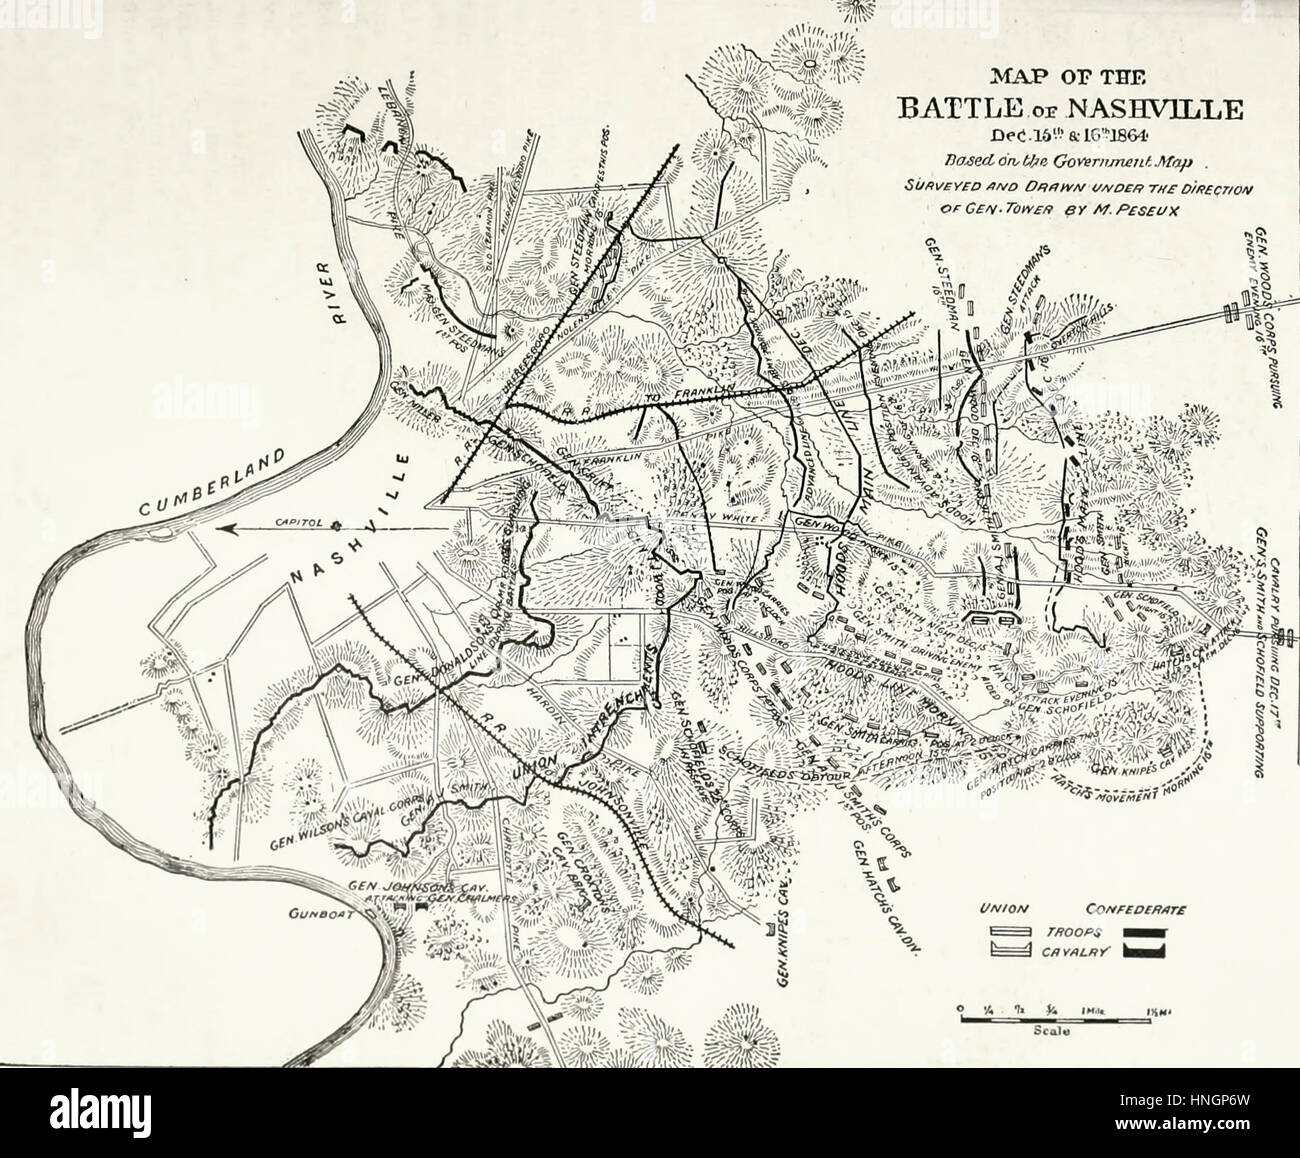 Karte von der Schlacht von Nashville, Dezember 15 und 16, 1864. USA Bürgerkrieg Stockfoto